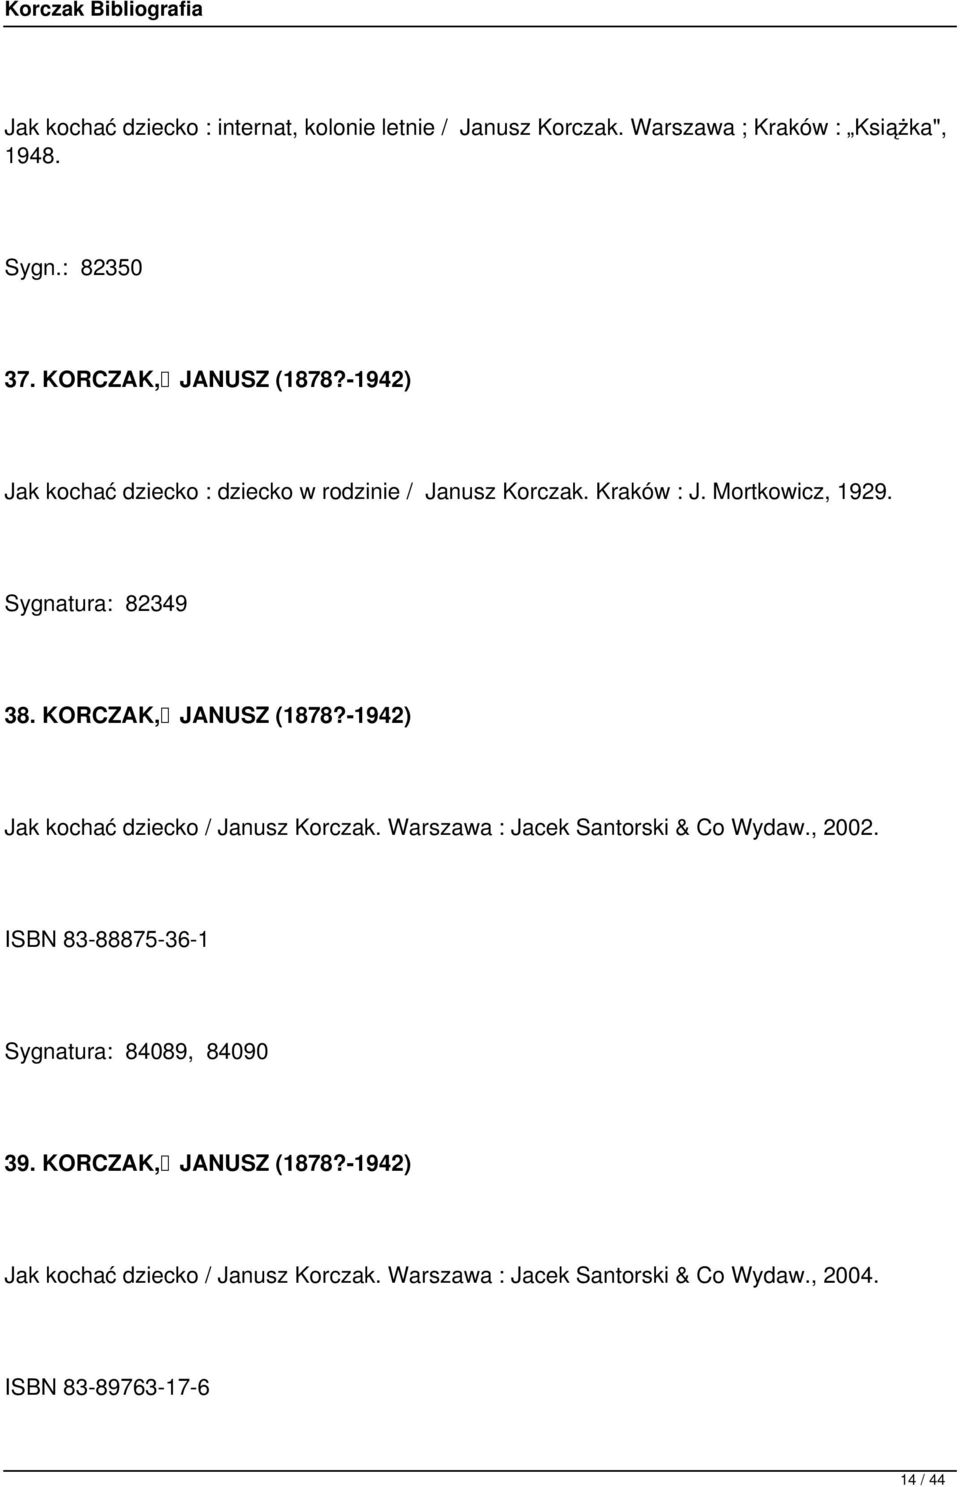 KORCZAK, JANUSZ (1878?-1942) Jak kochać dziecko / Janusz Korczak. Warszawa : Jacek Santorski & Co Wydaw., 2002.